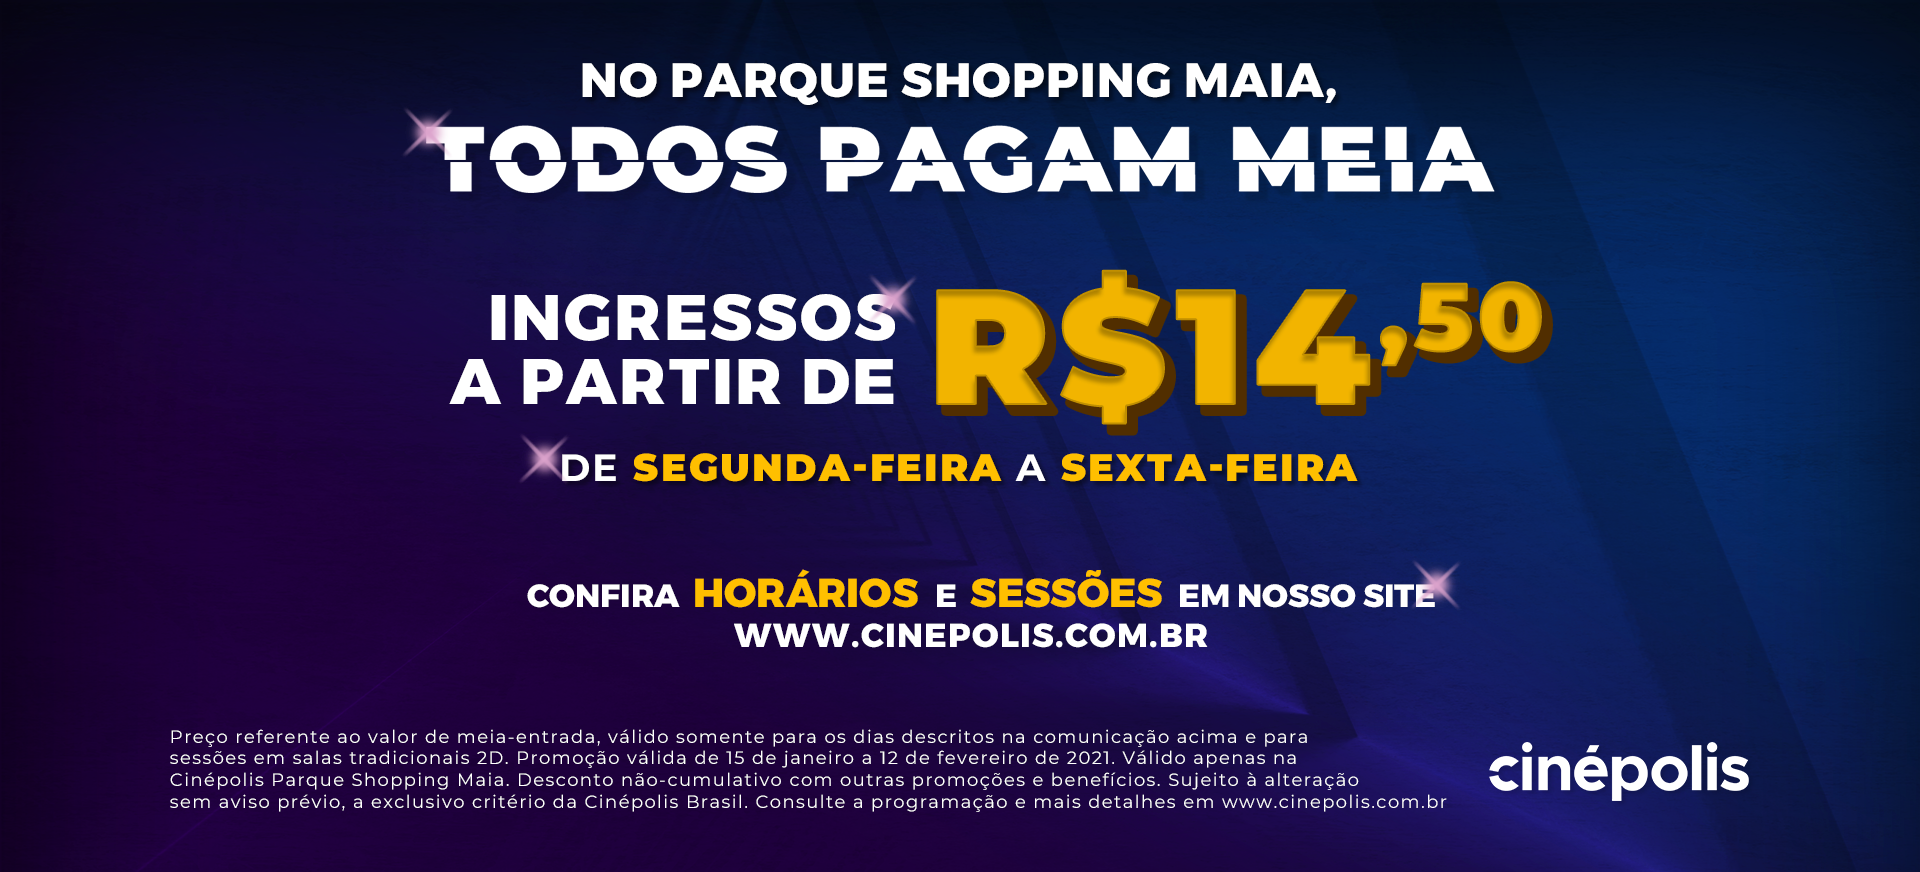 Parque Shopping Maia lança promoção Todos Pagam Meia em parceria com a Cinépolis